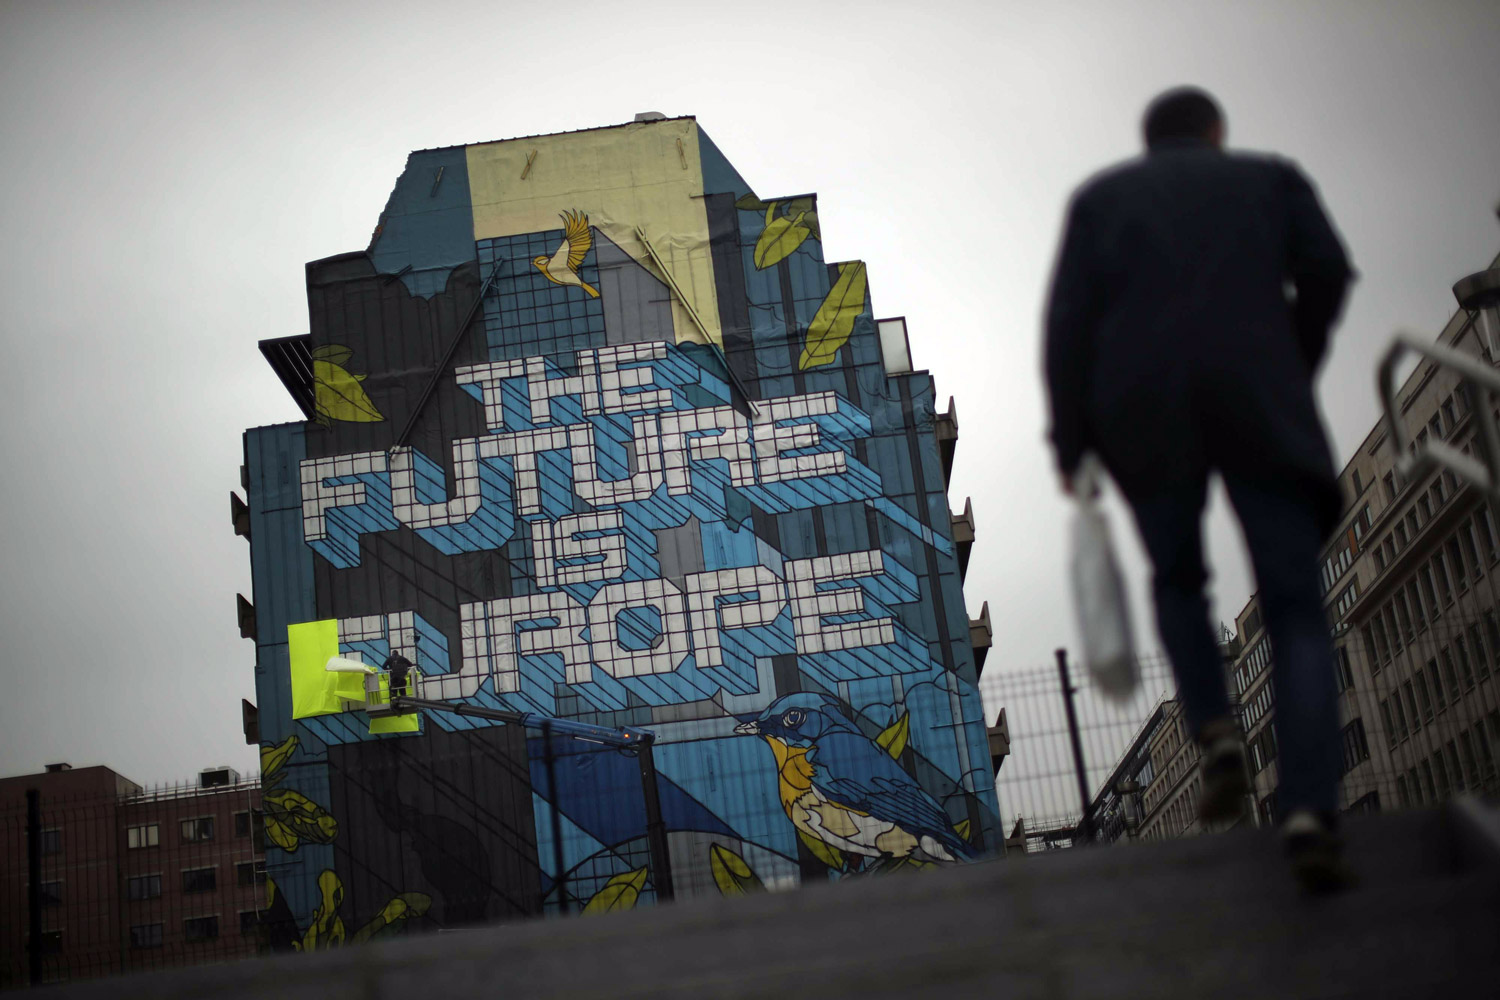 غرافيتي على بناء في شارع ببروكسل: أوروبا هي المستقبل